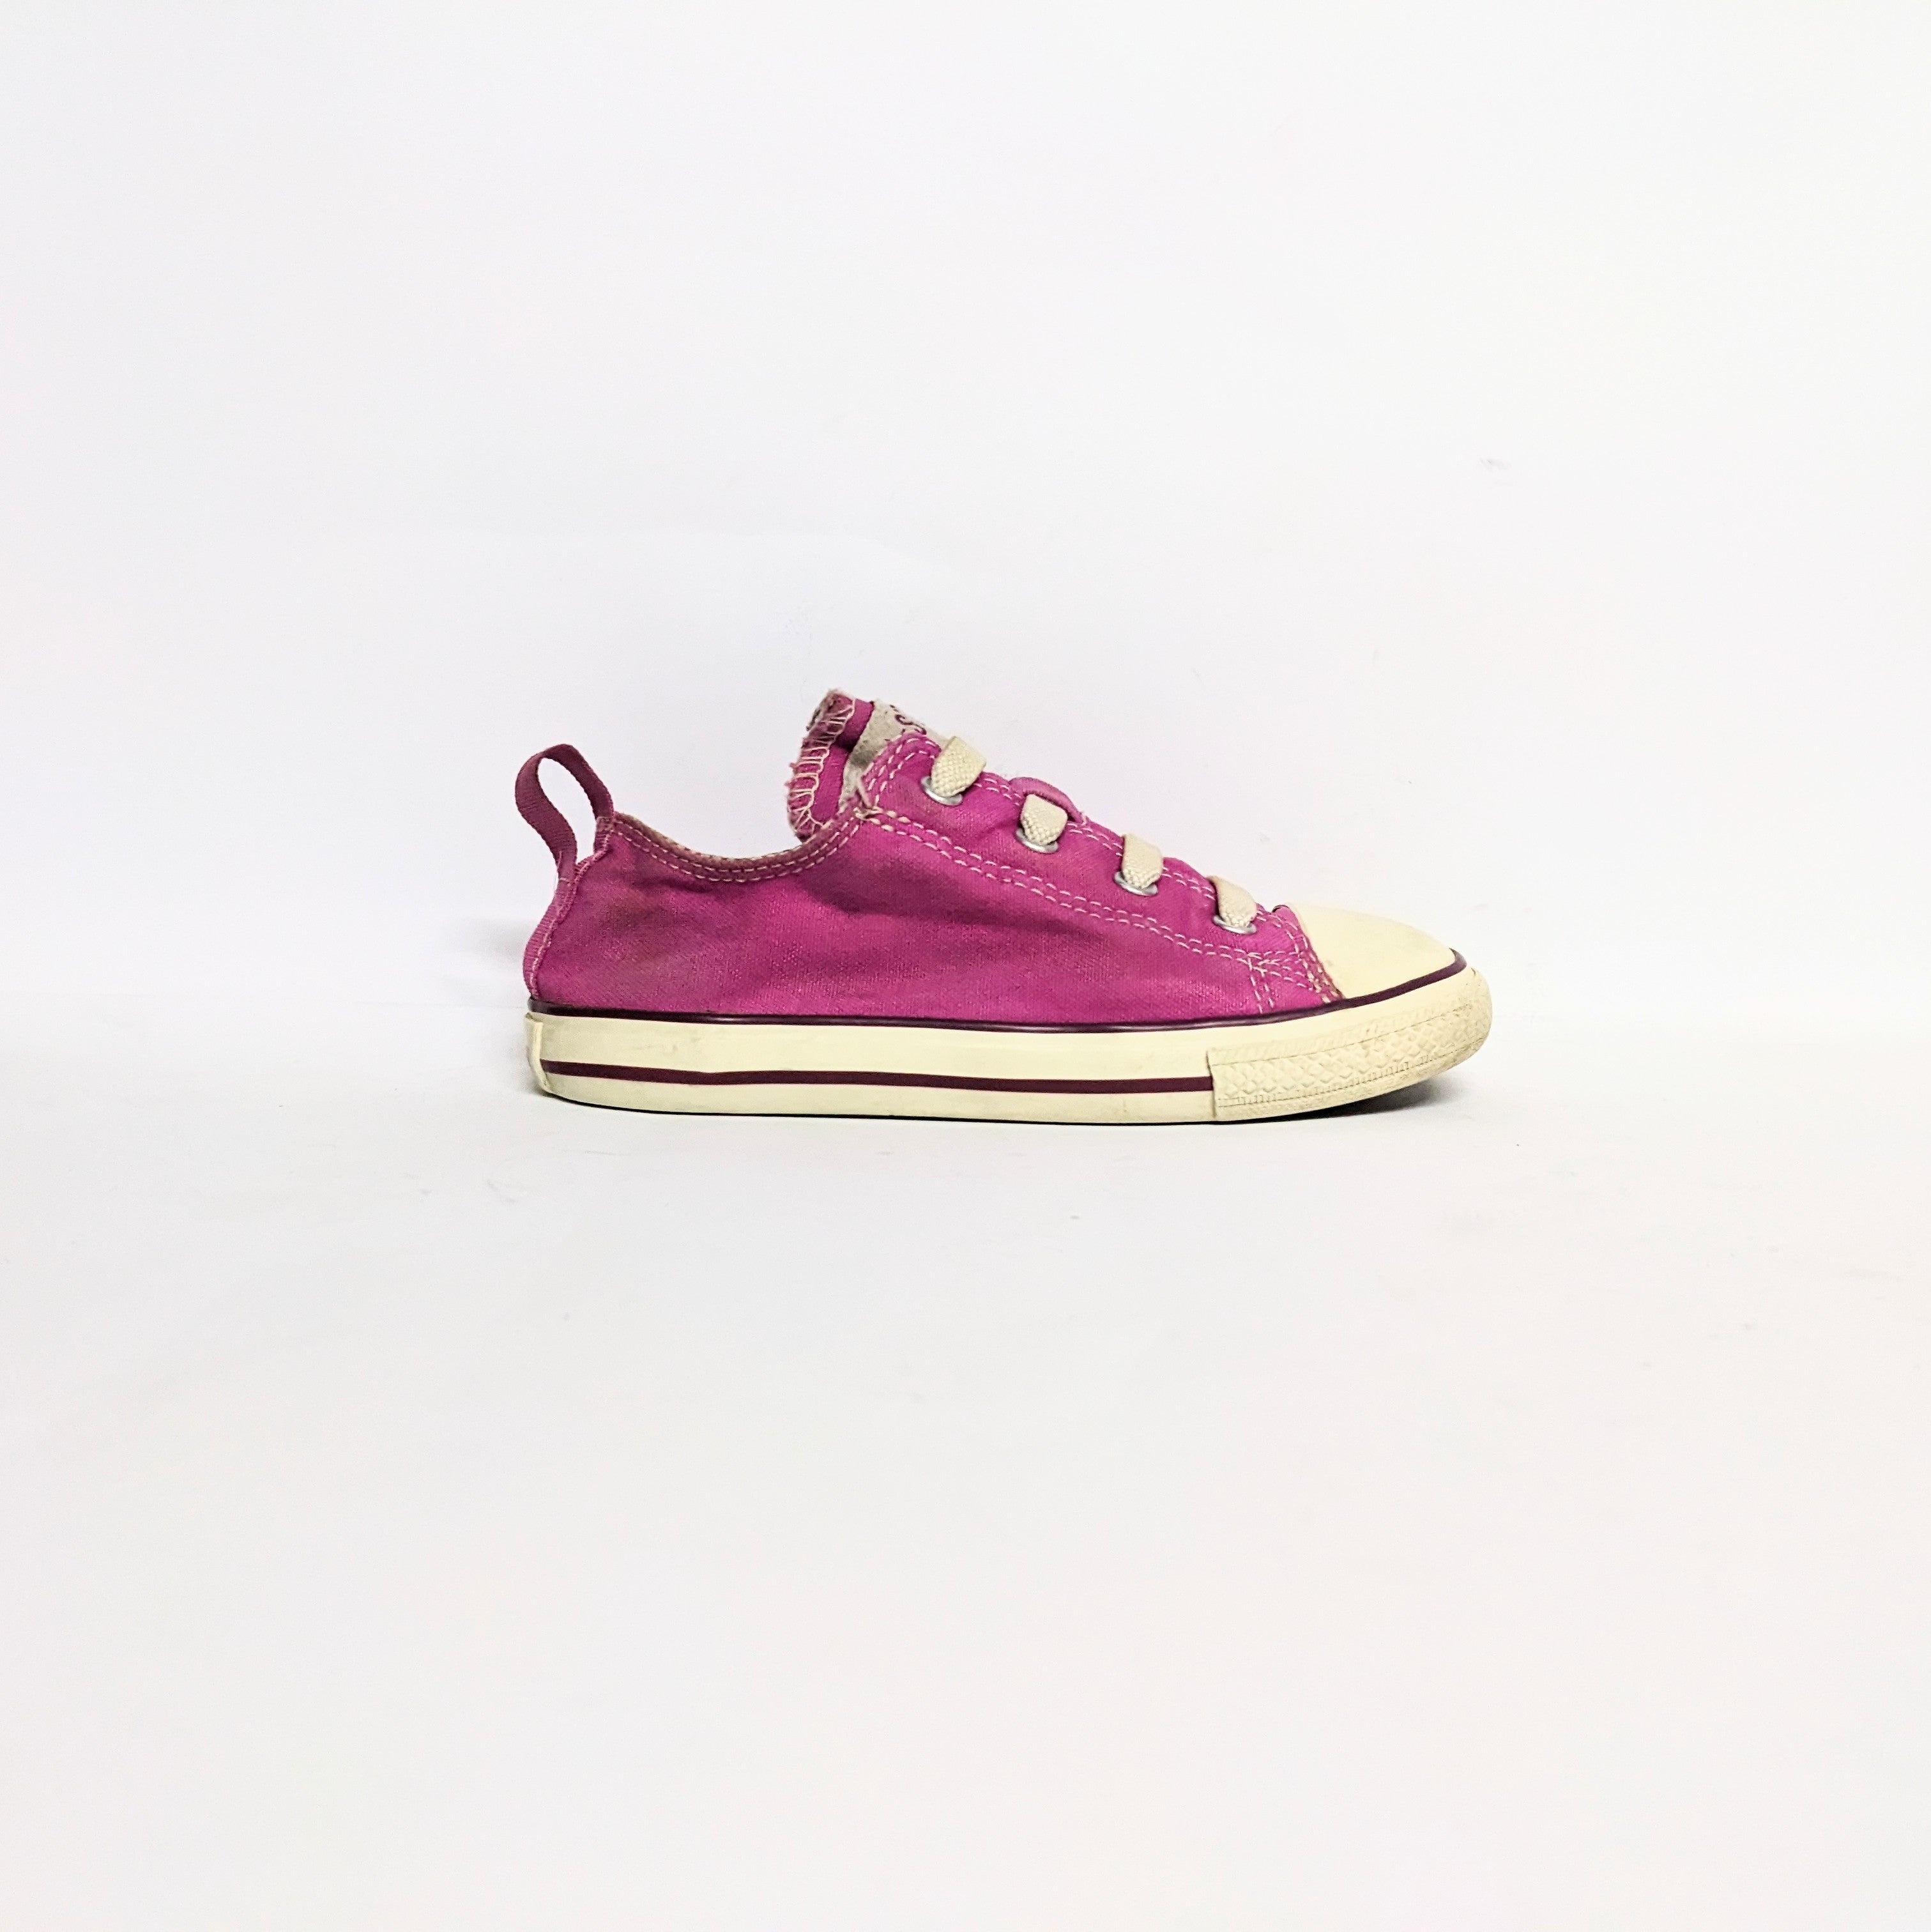 أحذية رياضية مفضلة للأطفال باللون الوردي من كونفرس